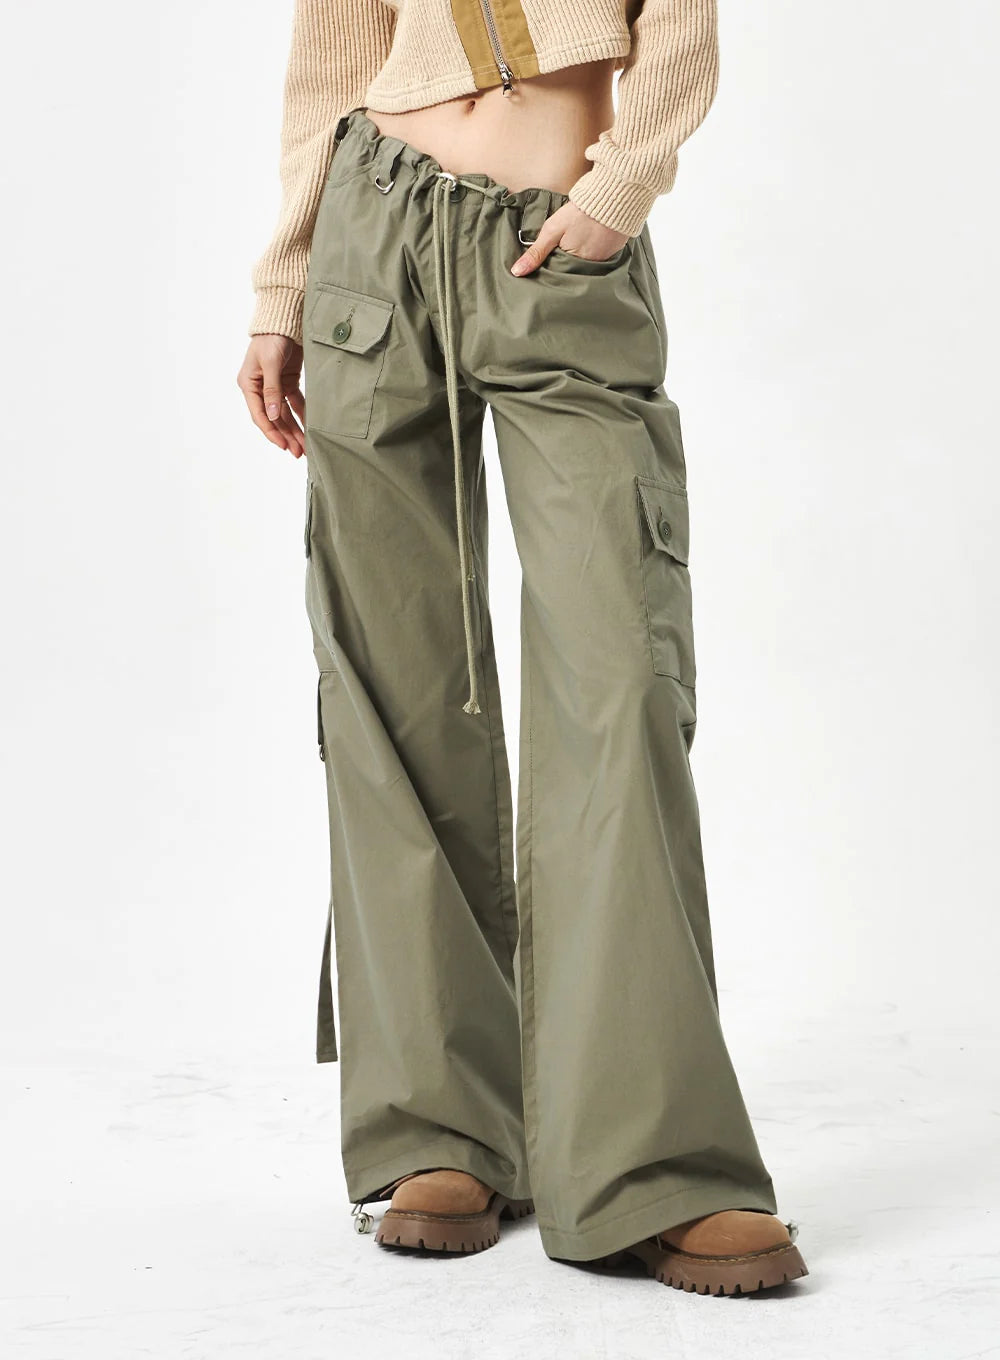 Women's Parachute Pants on Sale - Fashionable & Affordable Deals!